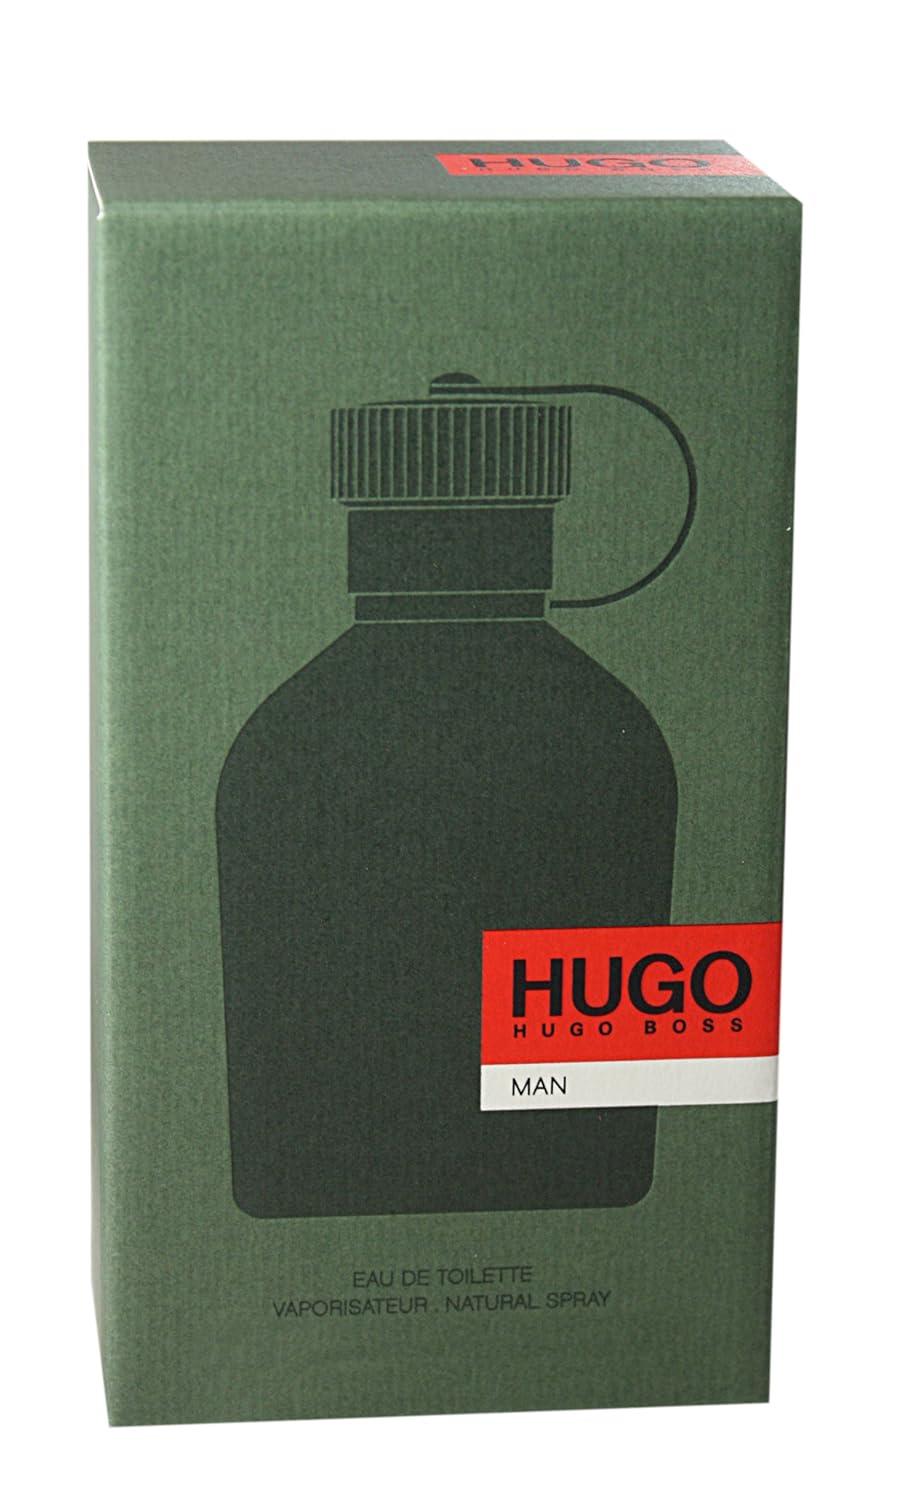 Hugo Boss Perfume For Men Review